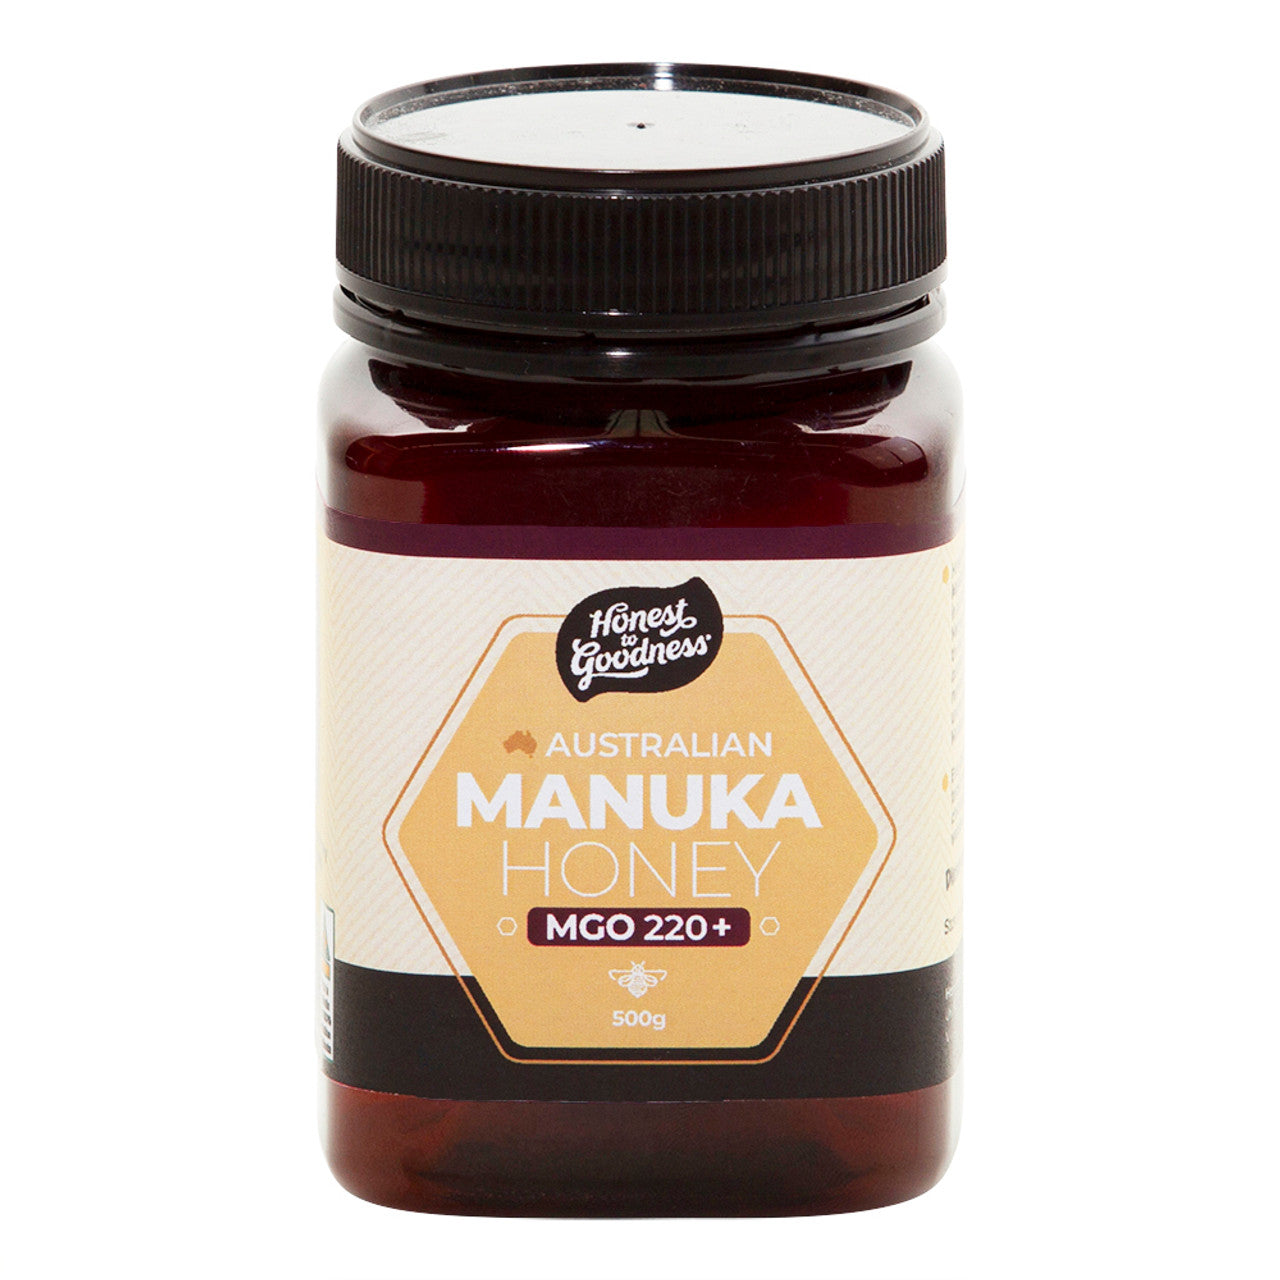 Honest To Goodness Manuka Honey 220+ MGO 500g